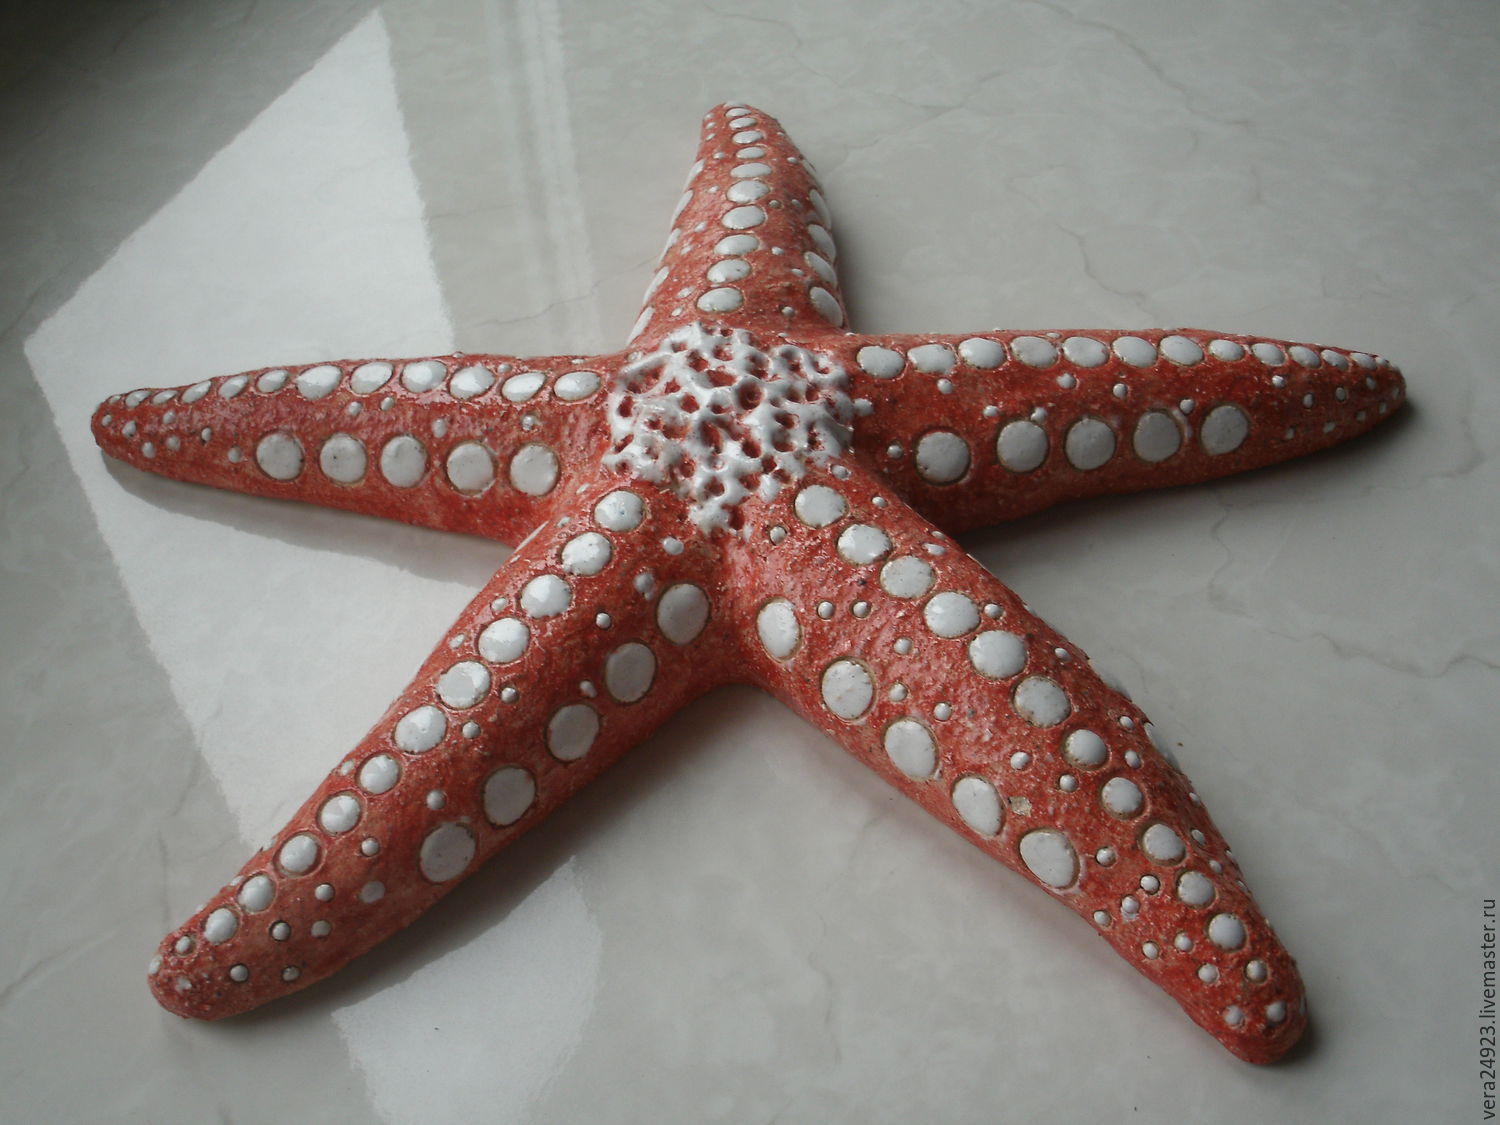 Скульптура "Морская звезда"